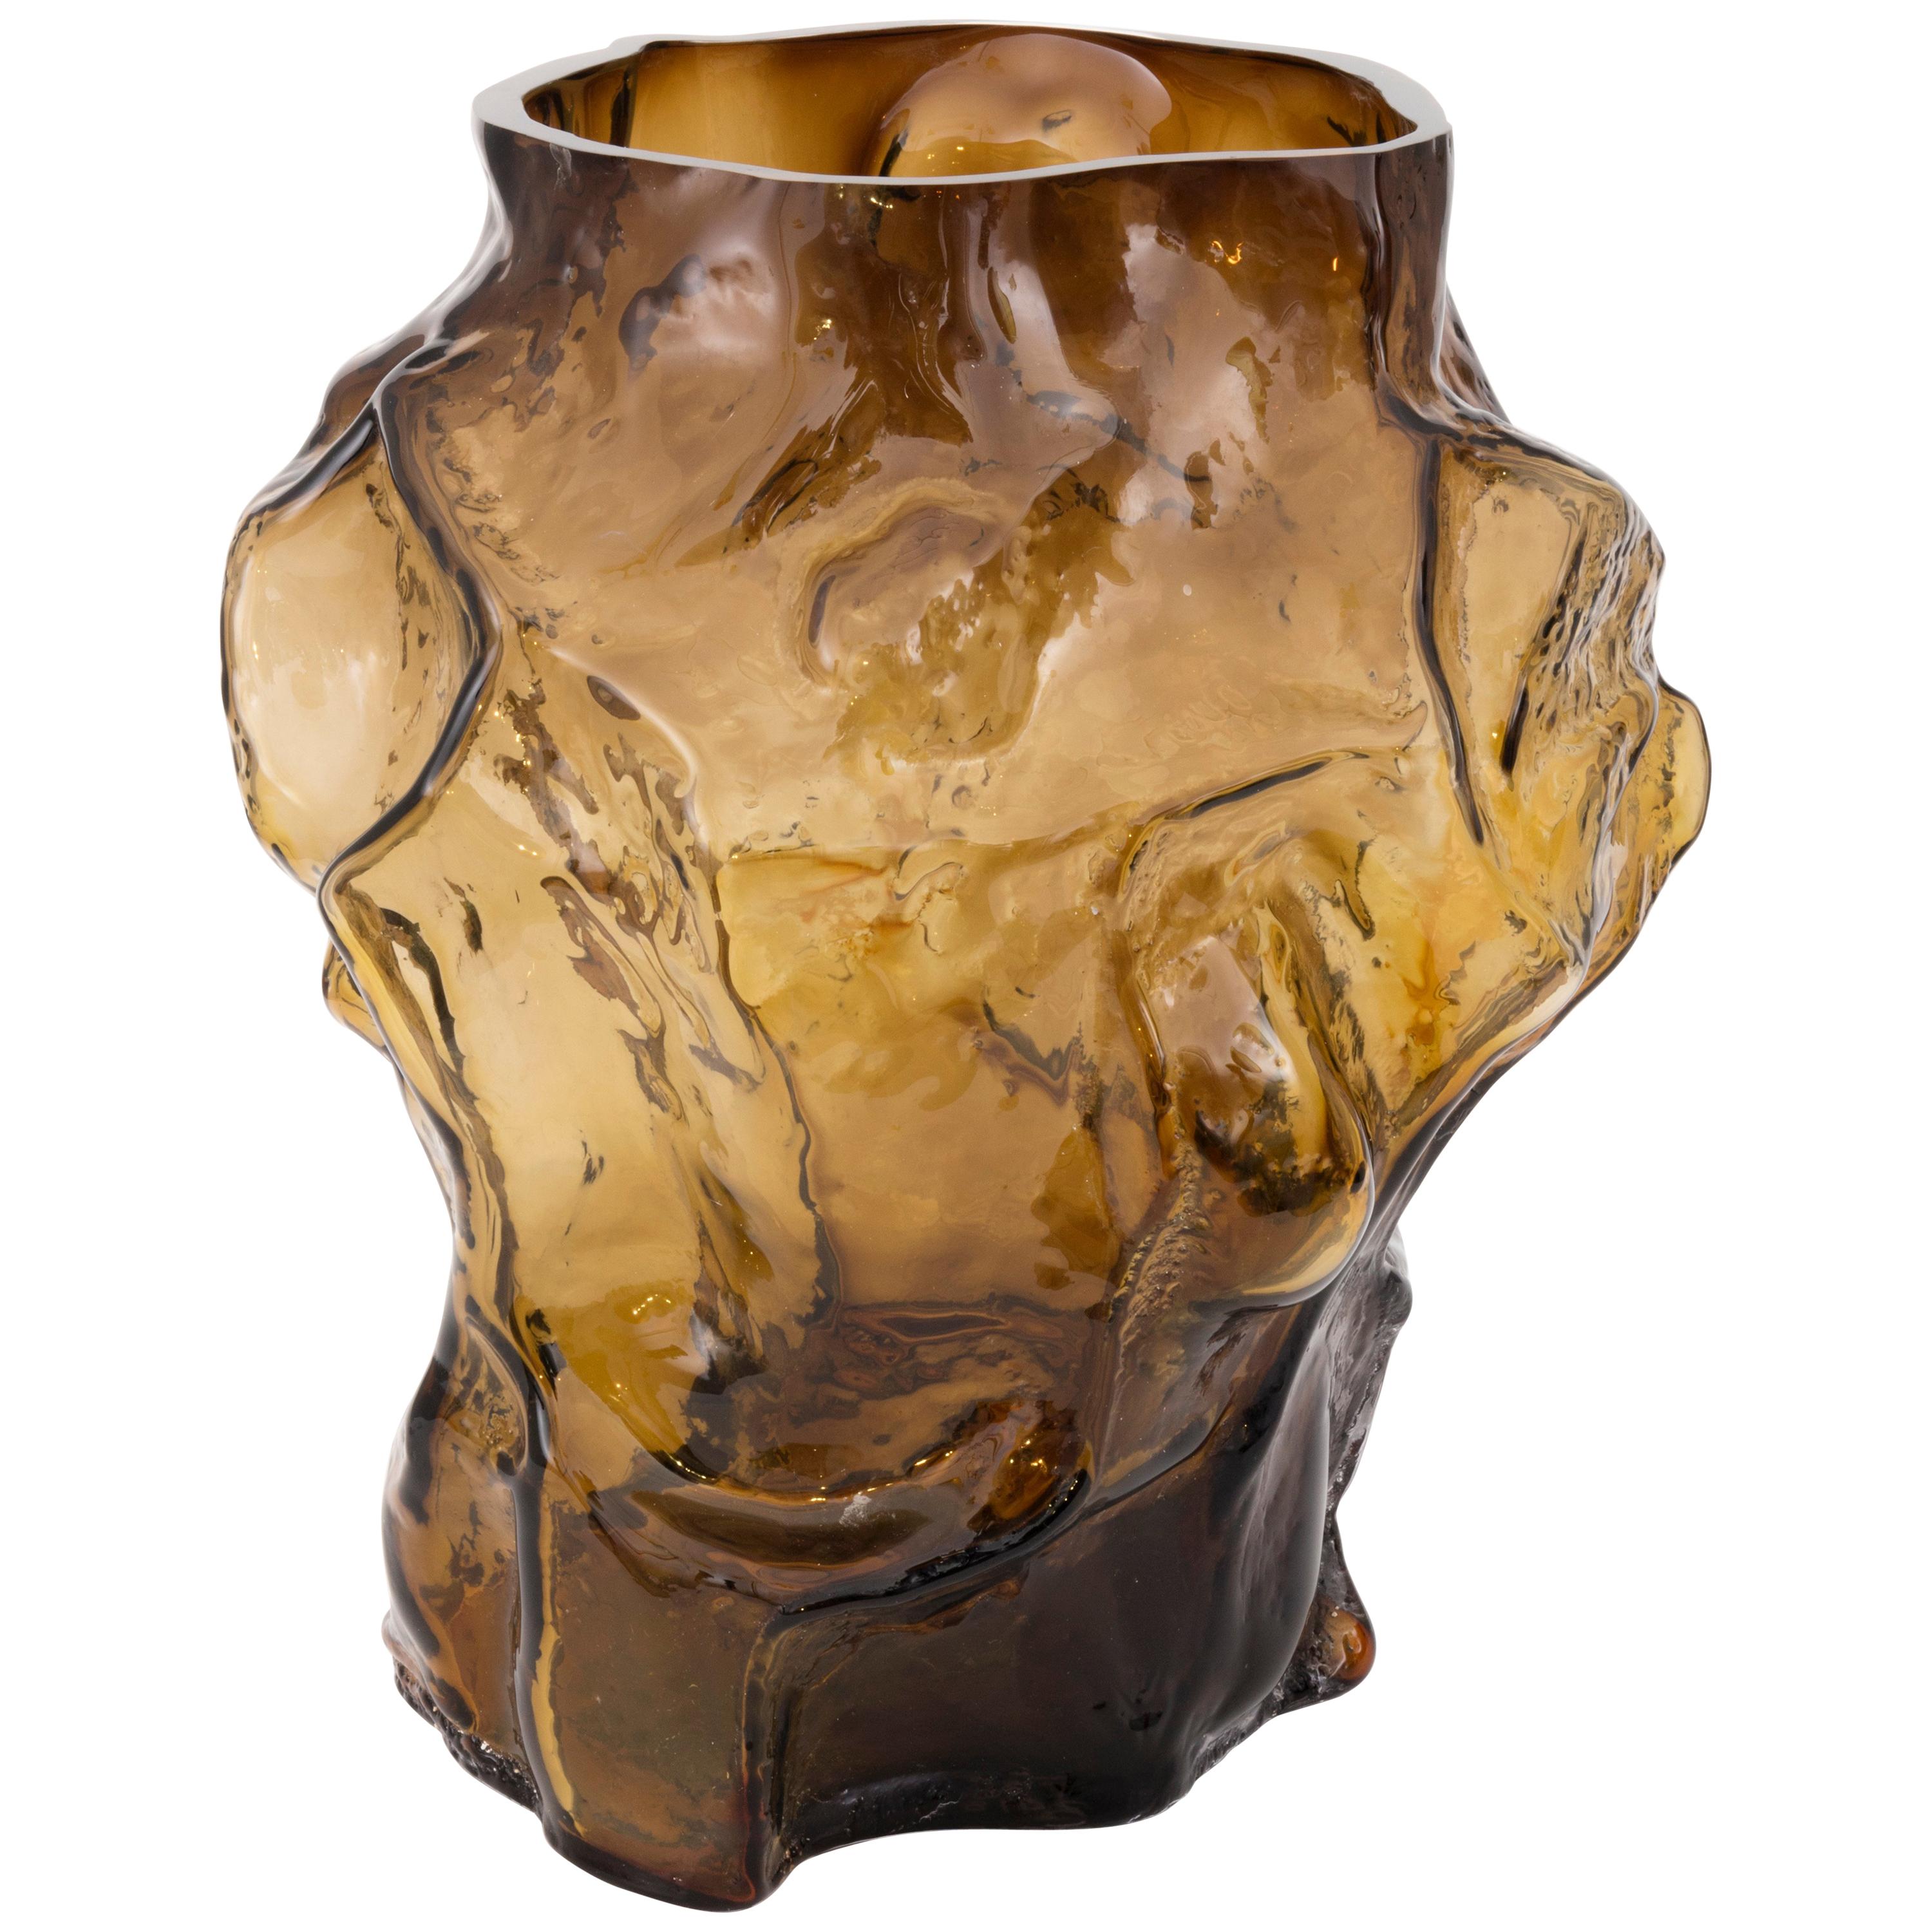 Contemporary Design Unique Glass 'Mountain' Vase by Fos, Caramel